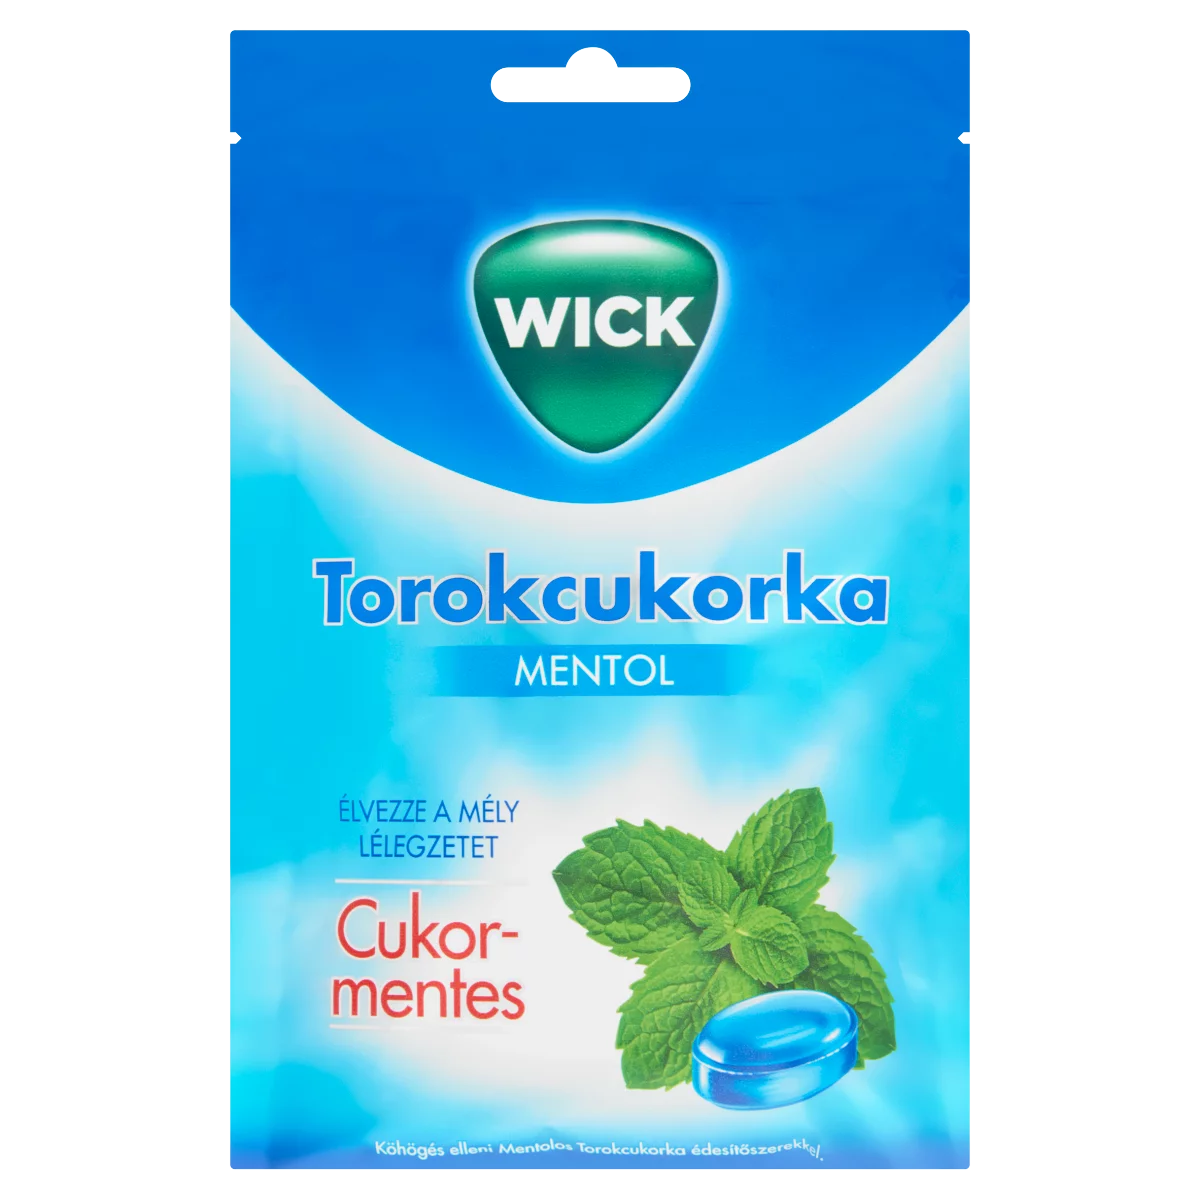 Wick Mentol cukormentes torokcukorka 72 g